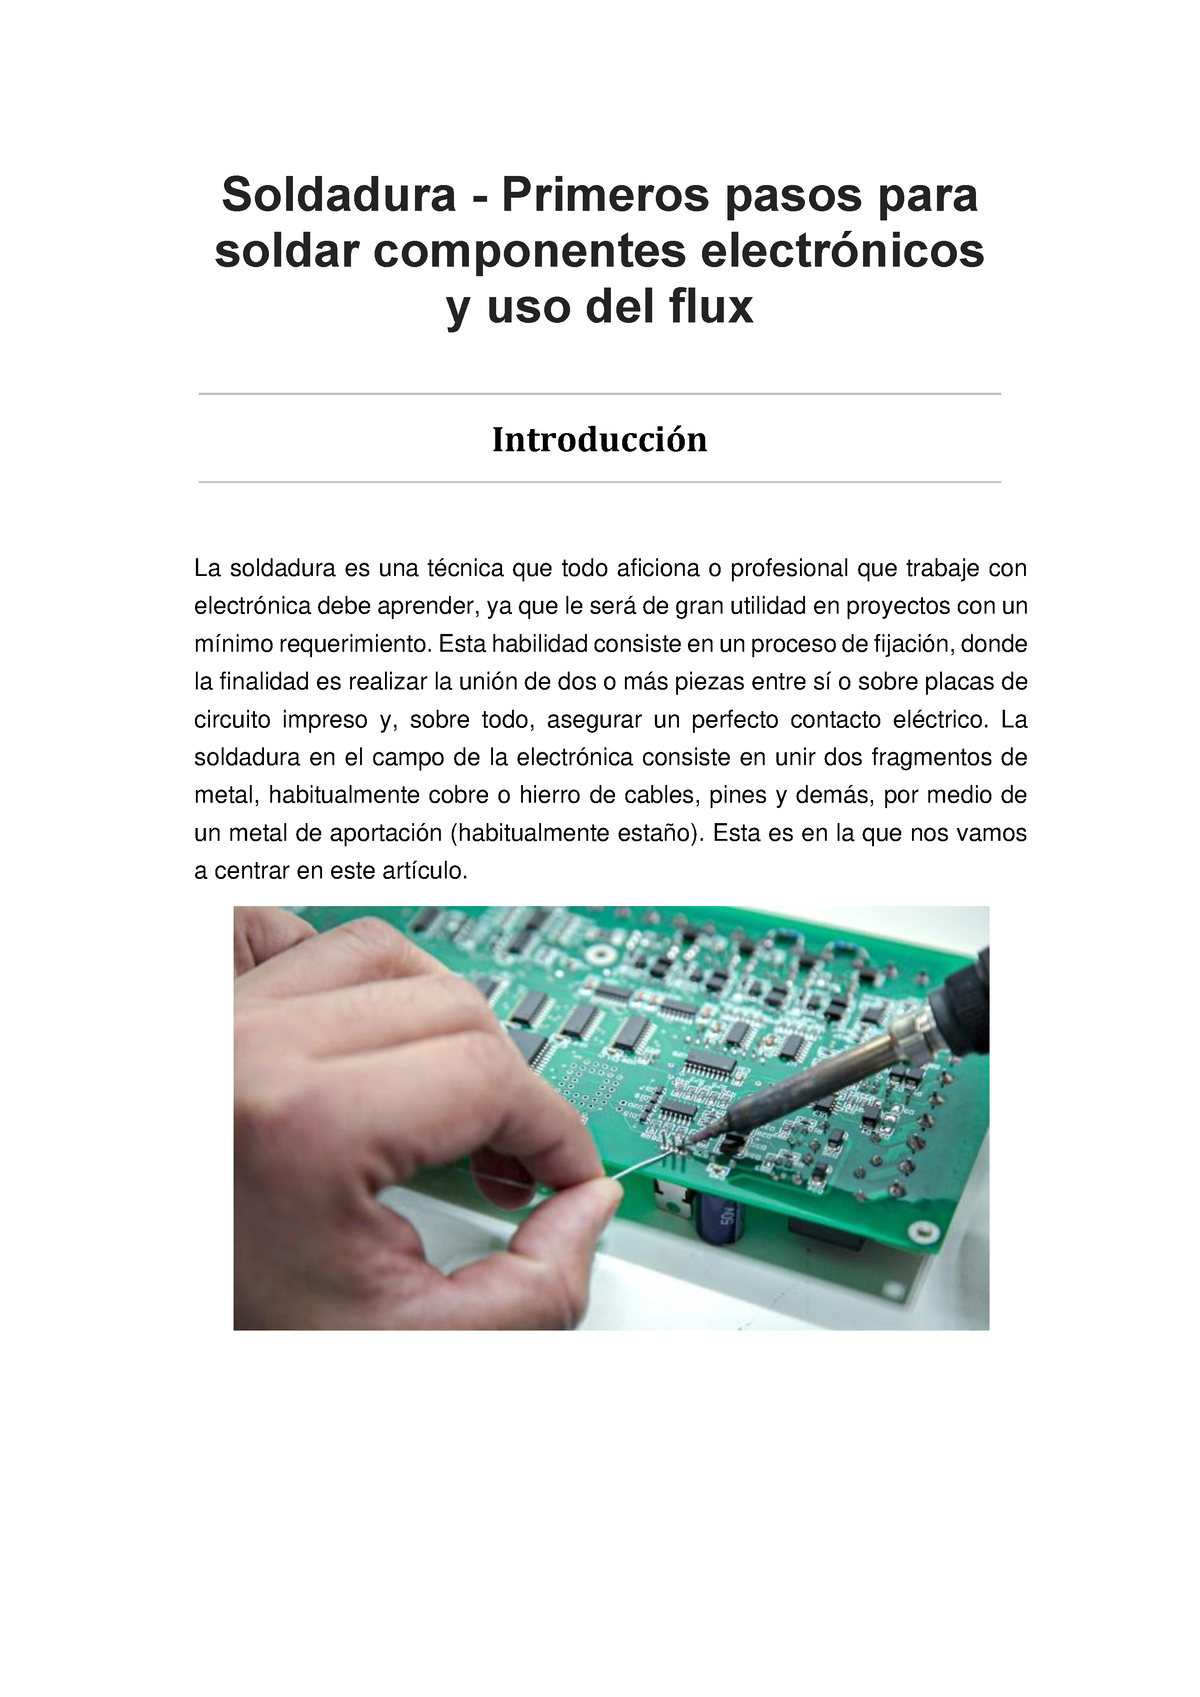 Soldadura - Primeros pasos para soldar componentes electrónicos y uso del  flux